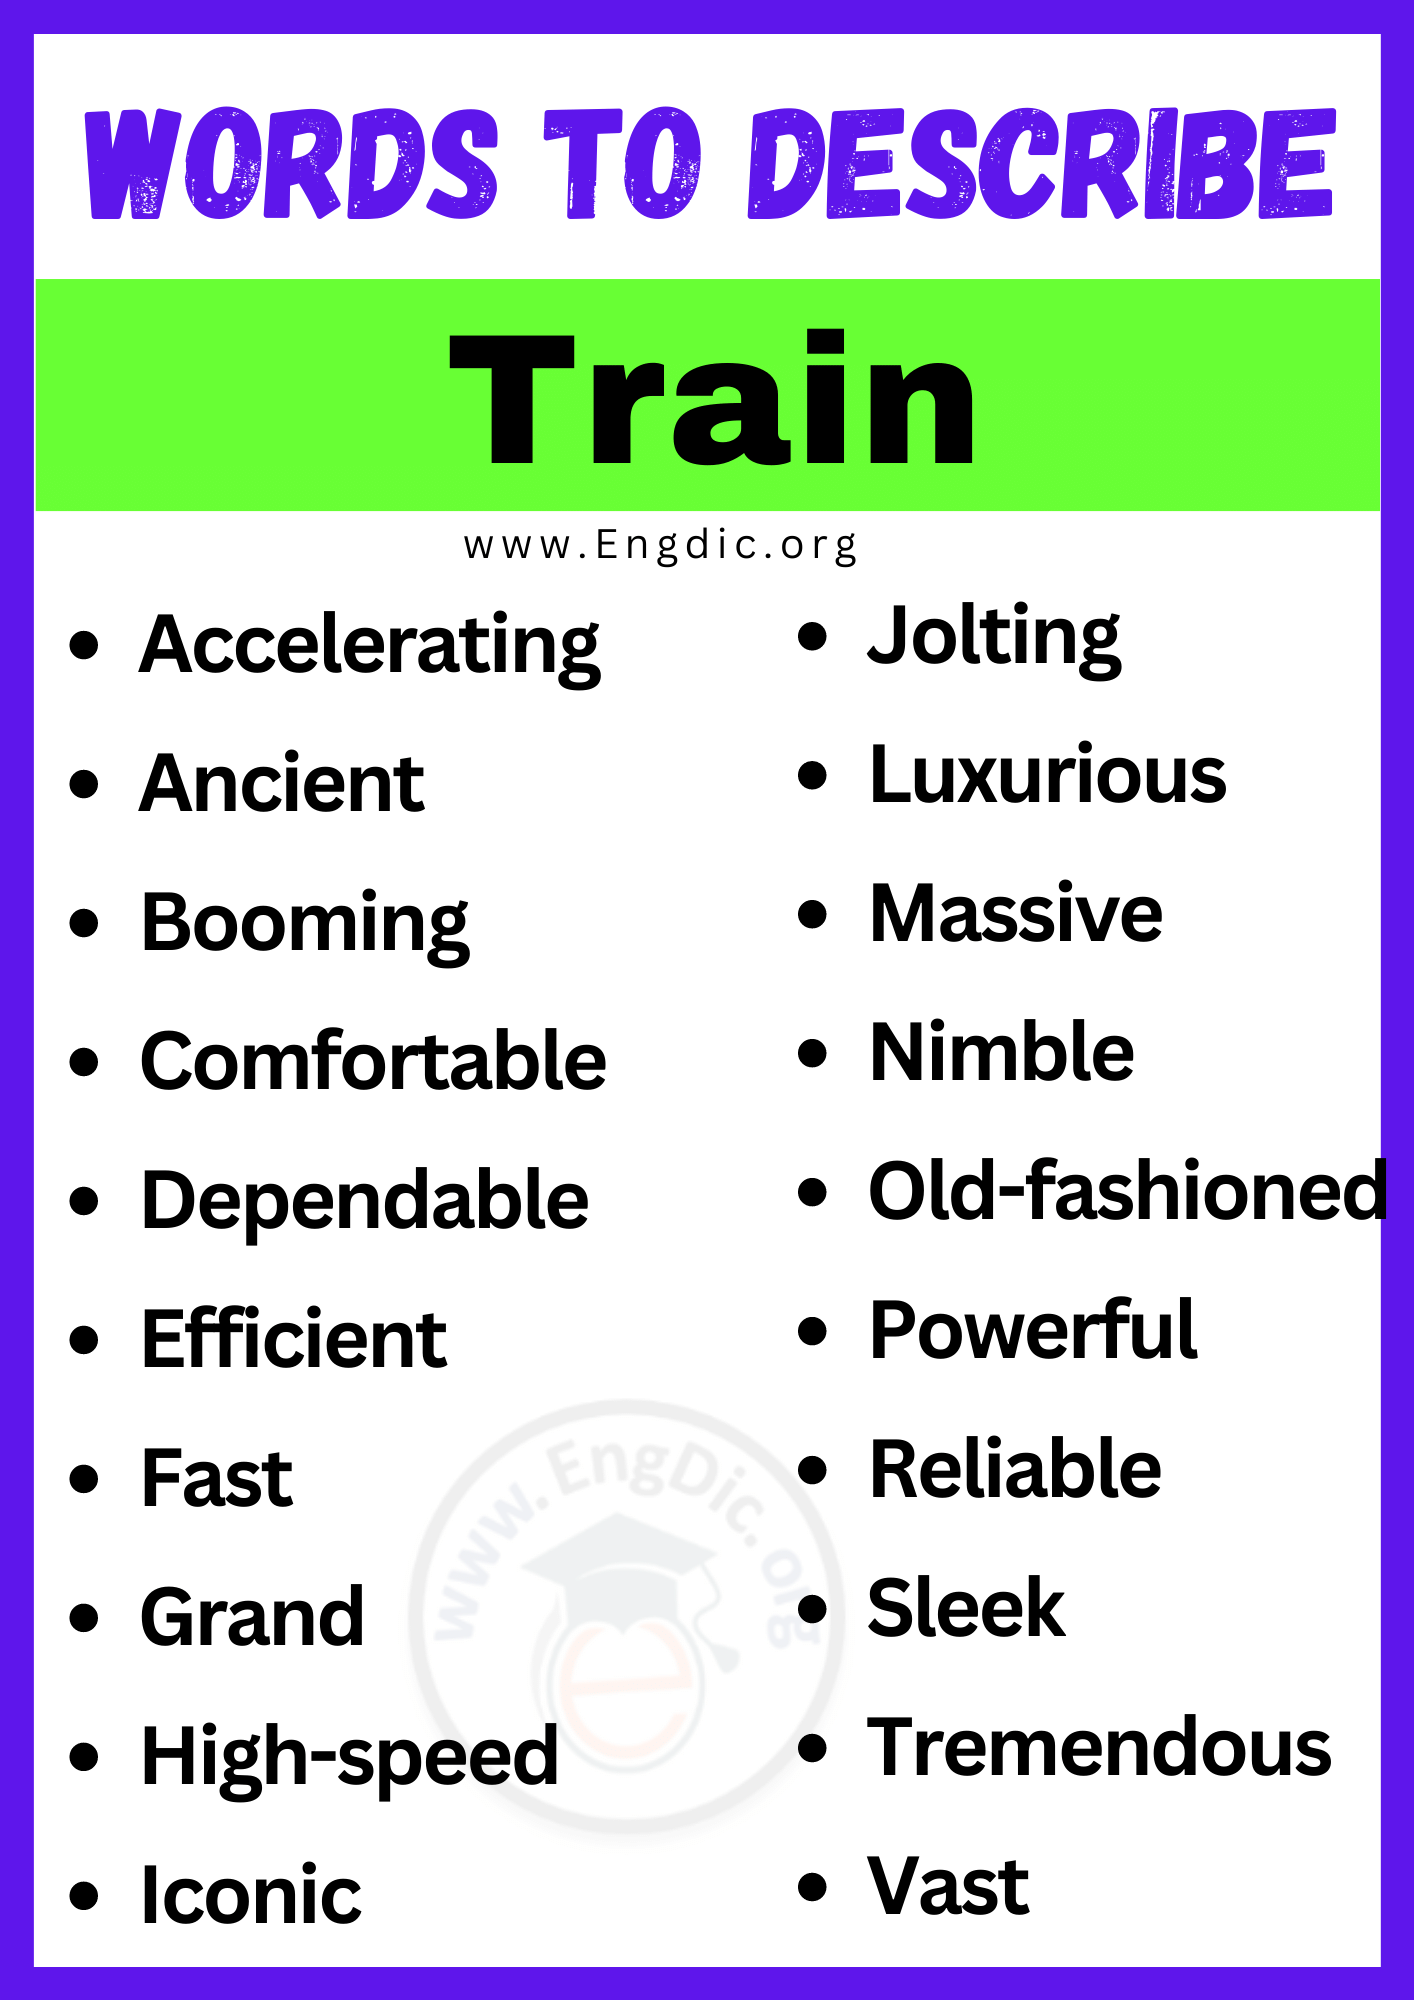 Words to Describe Train